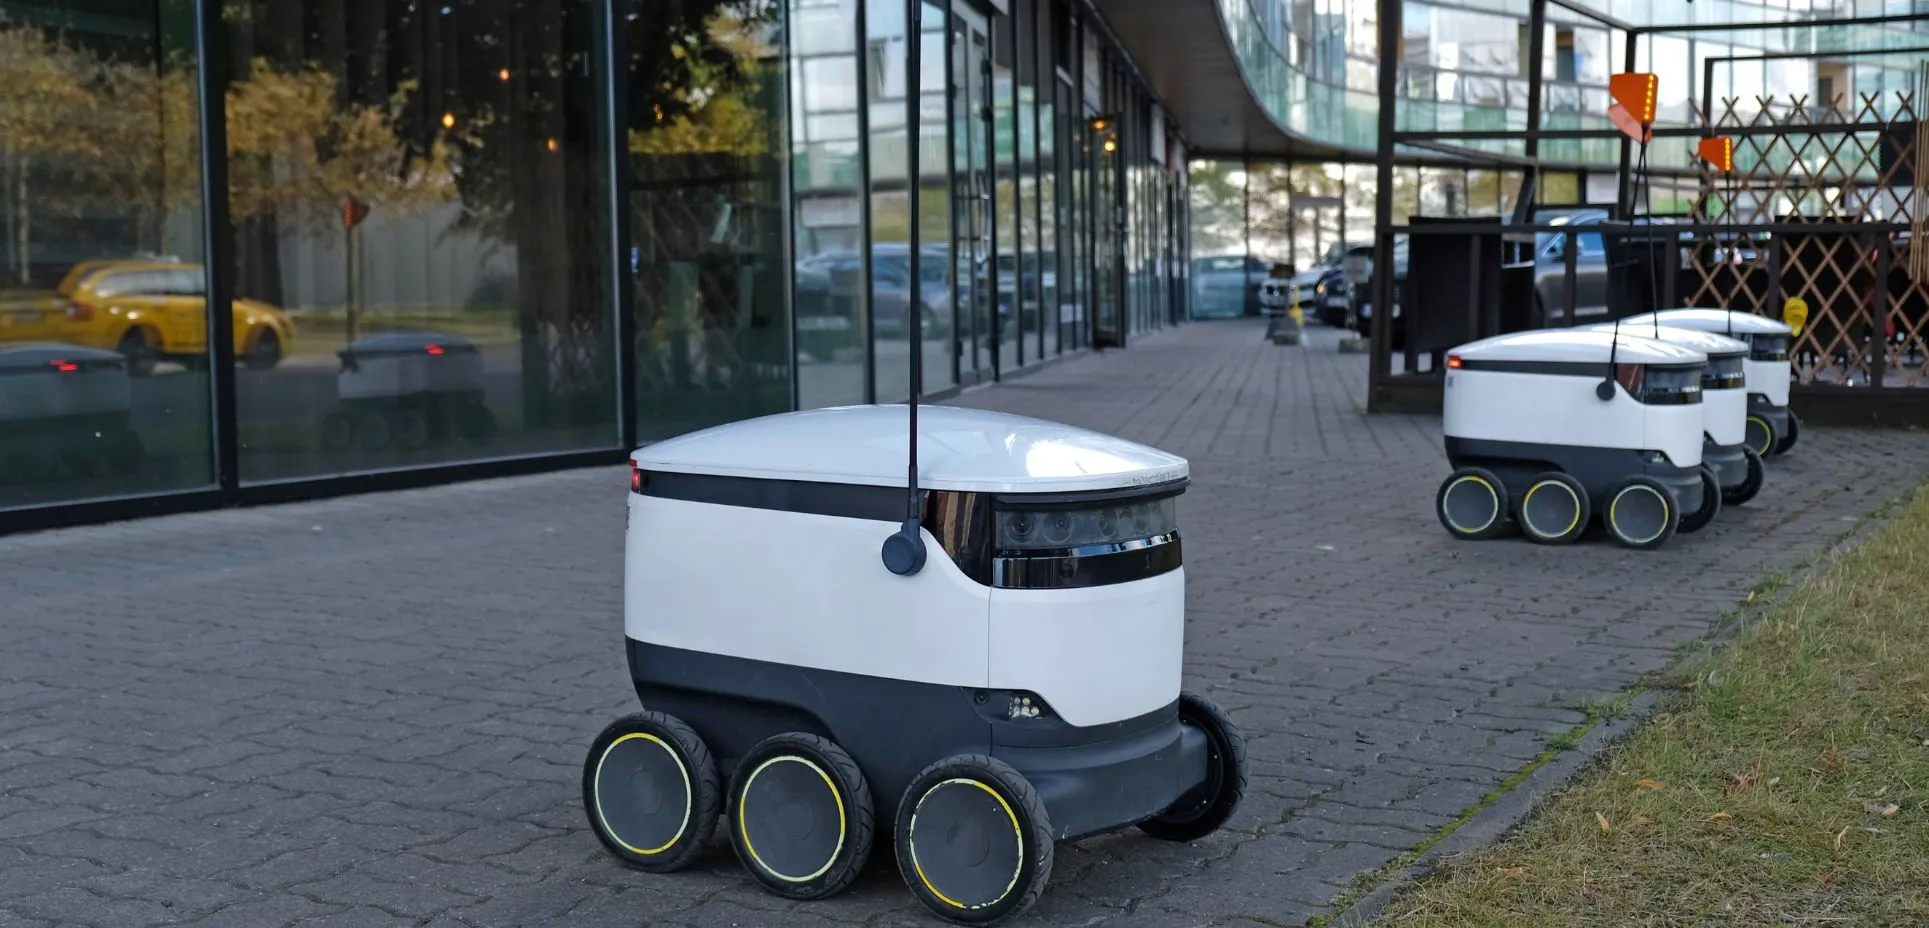 Autonomous delivery robot on street.